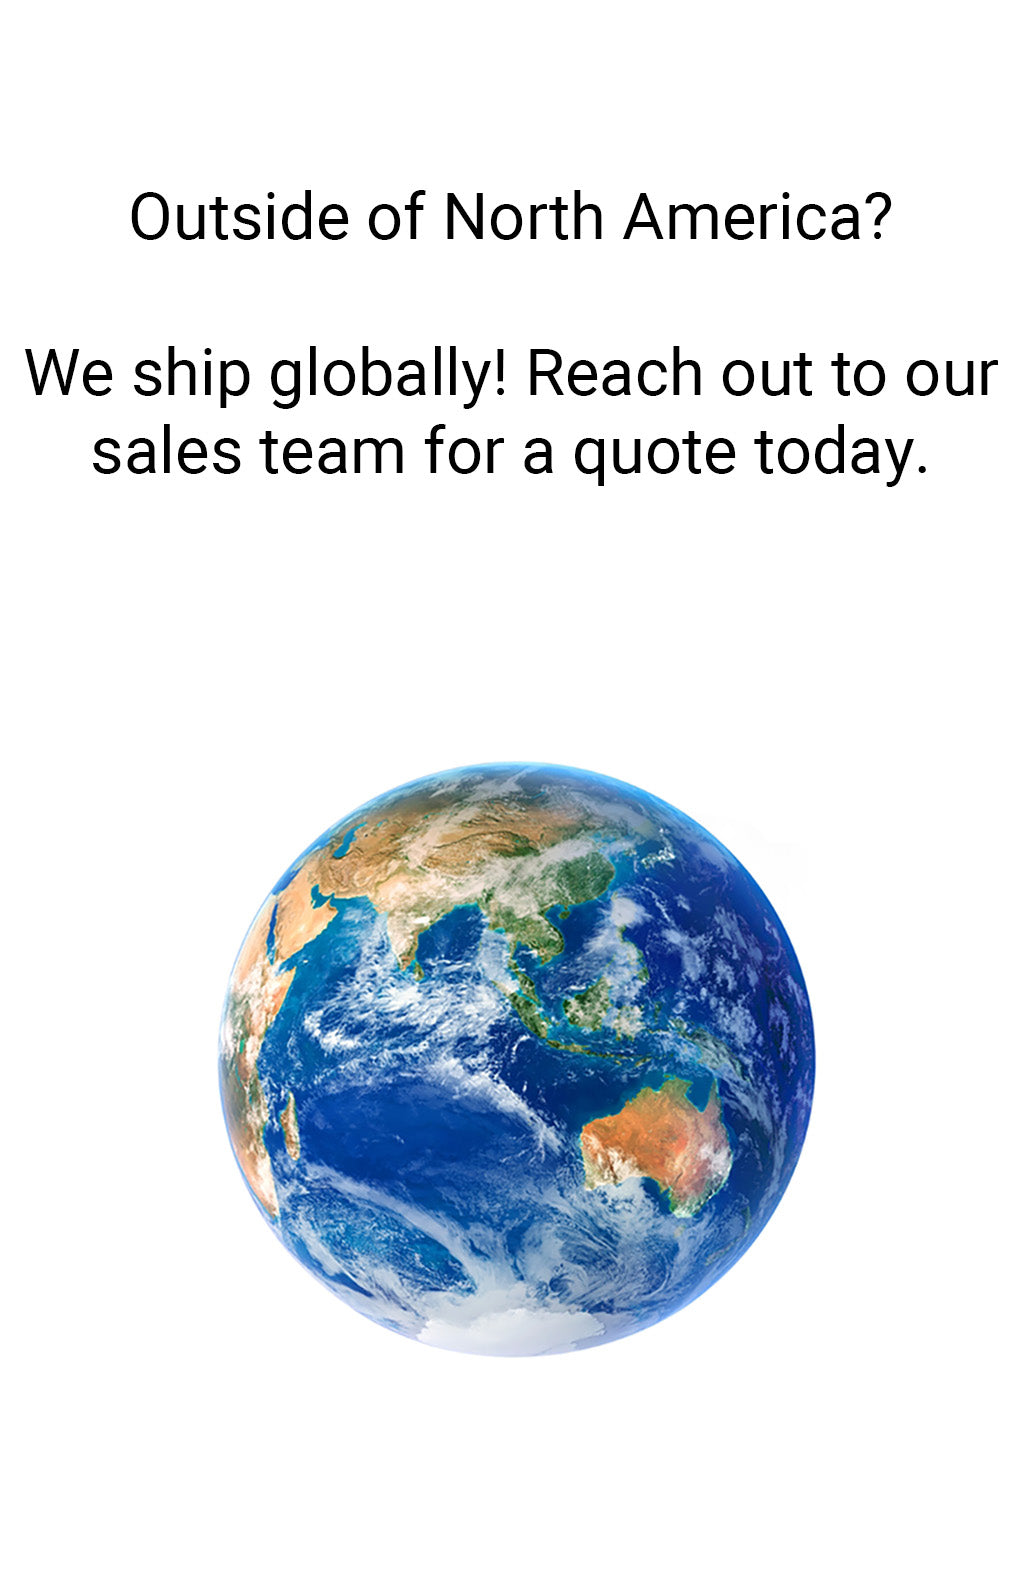 Globe symbolizing worldwide shipping